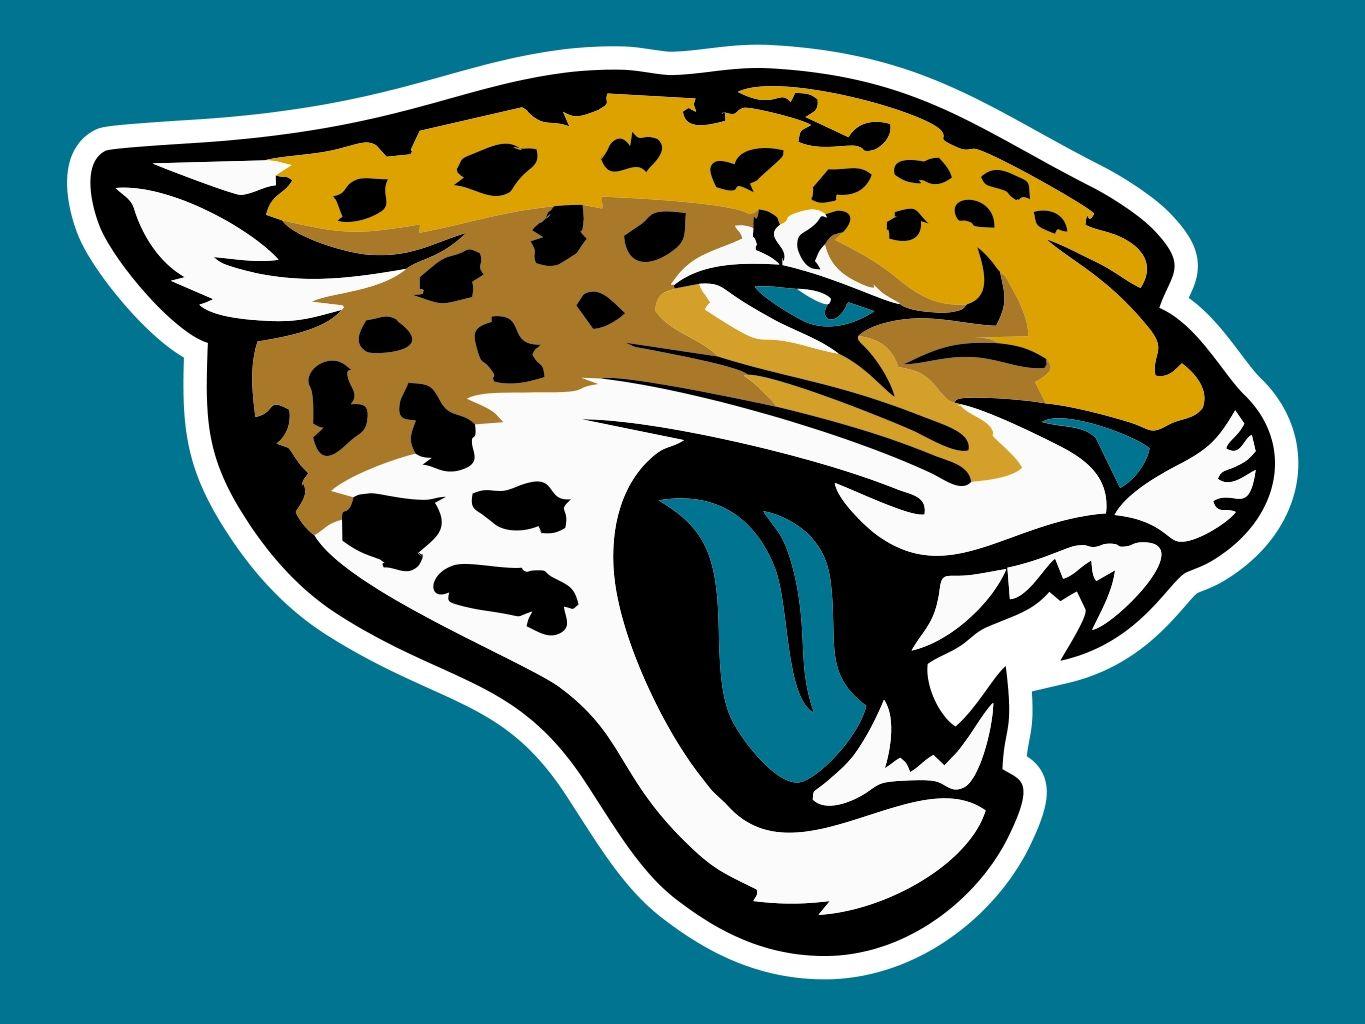 Jaguars Football Team Logo - Jacksonville Jaguars. Major League Sports